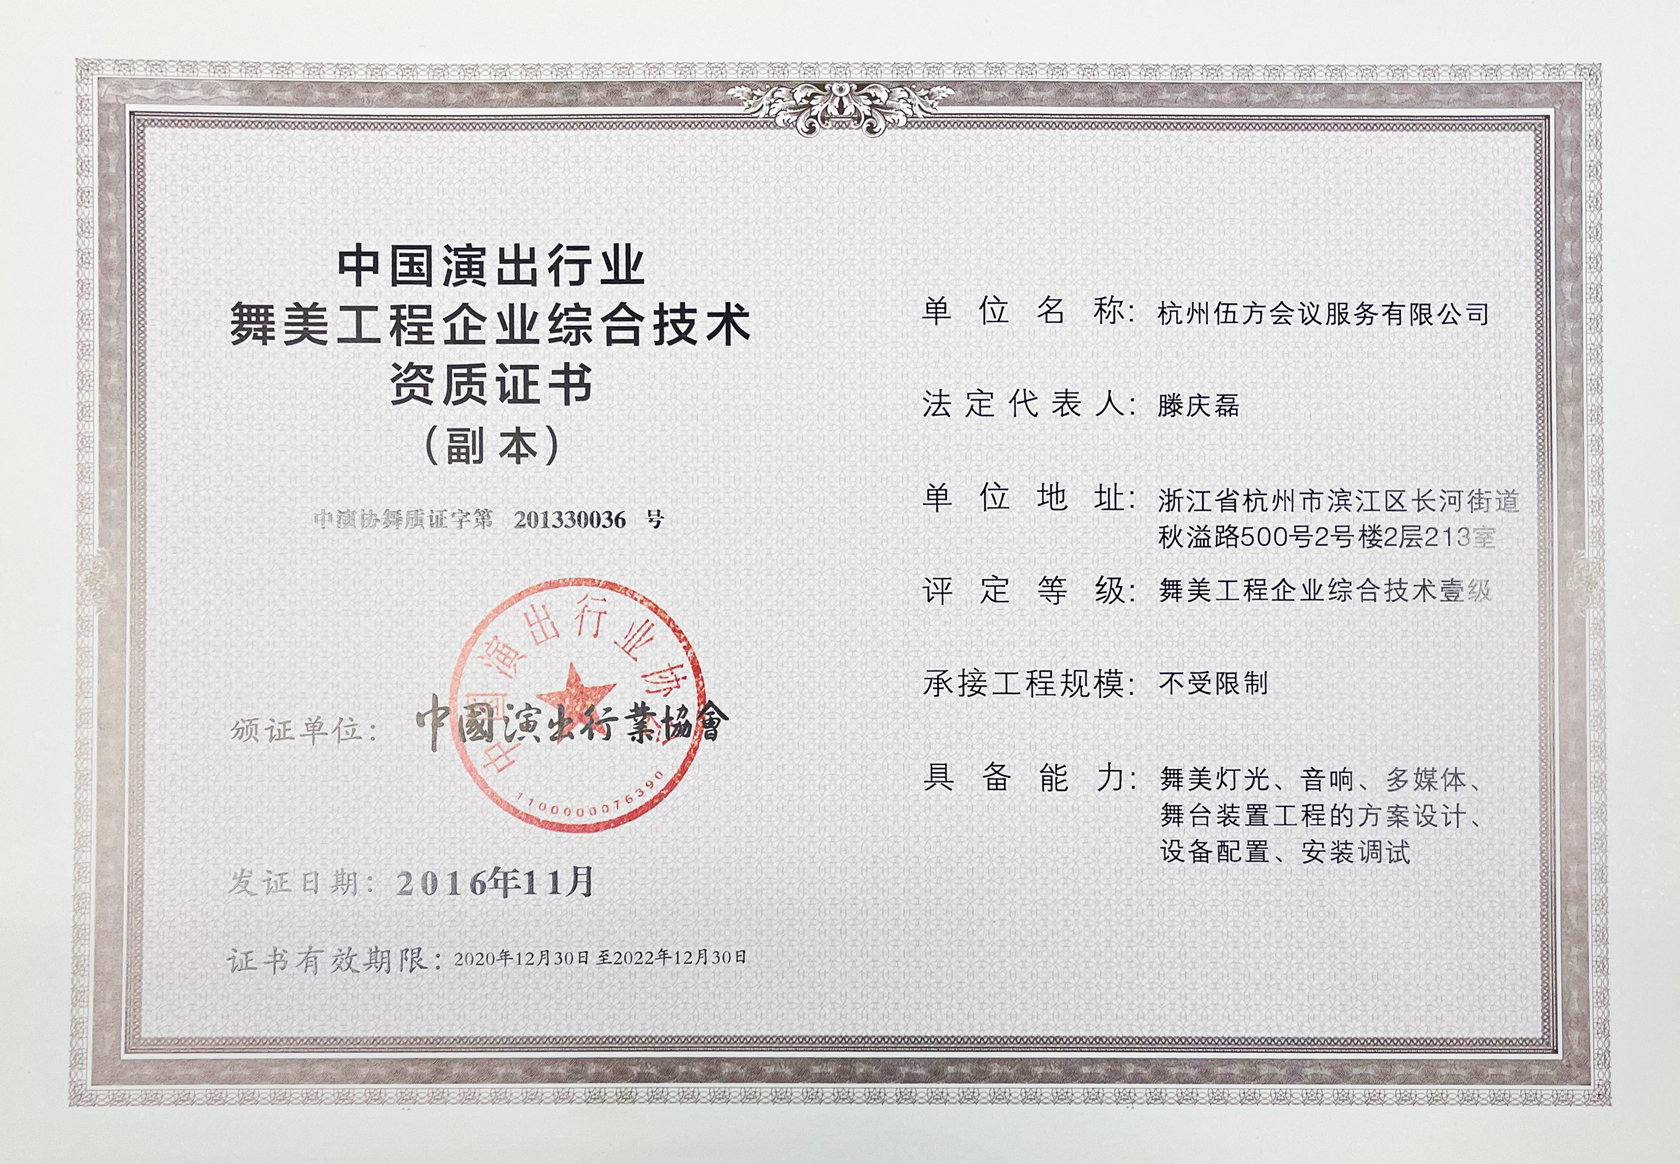 一级舞美工程供应商资质 中国演出行业舞美工程企业综合技术资质证书-1